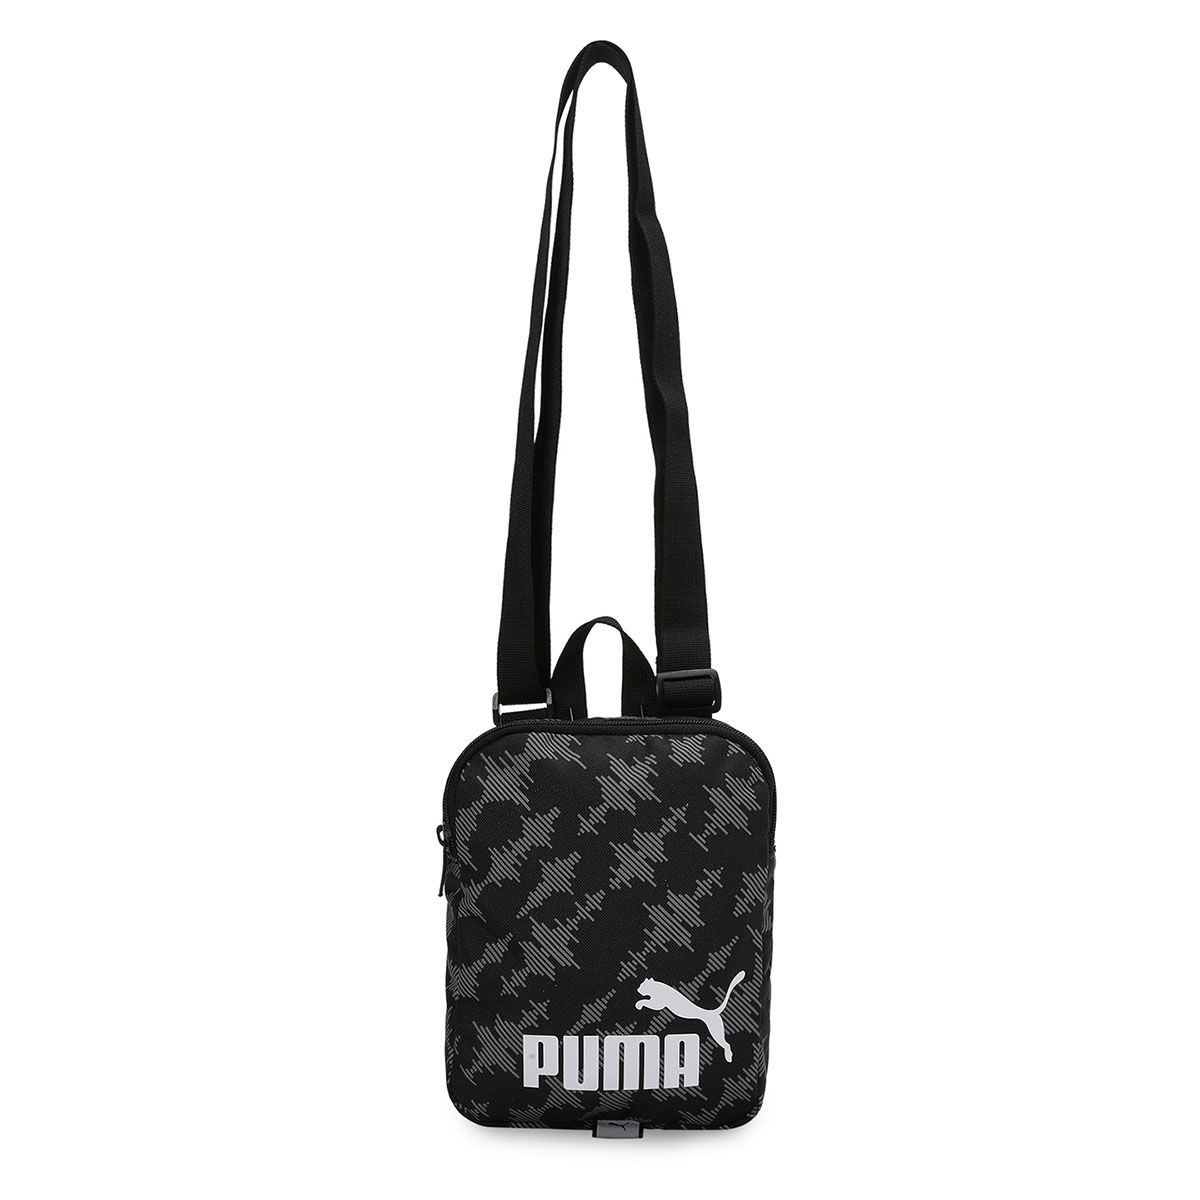 Puma Tote Bag Carry All Gym Travel Purse Double Strap Bronze Zip Black  Handbag | eBay